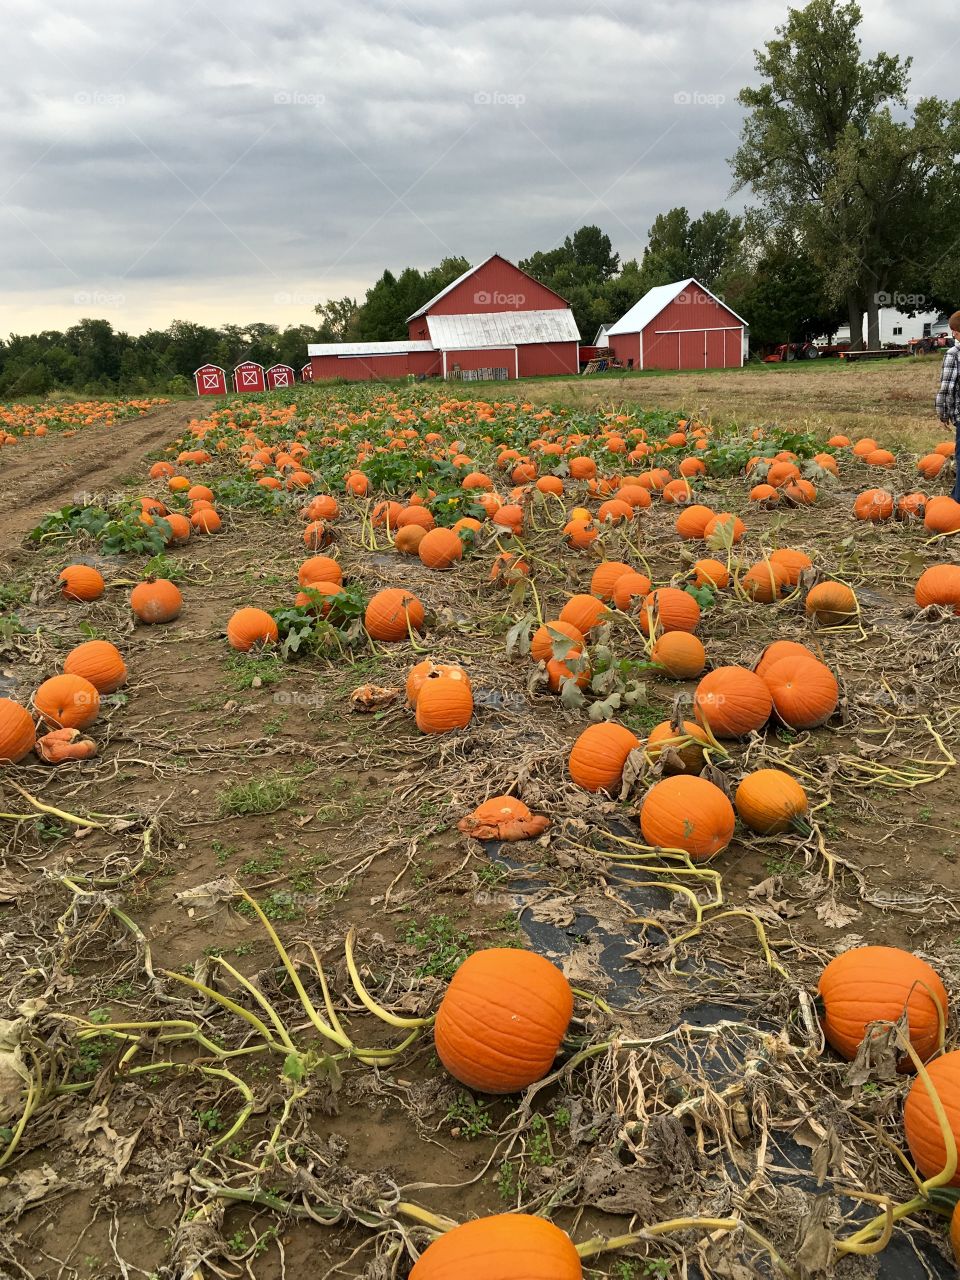 Pumpkin patch in Ohio 